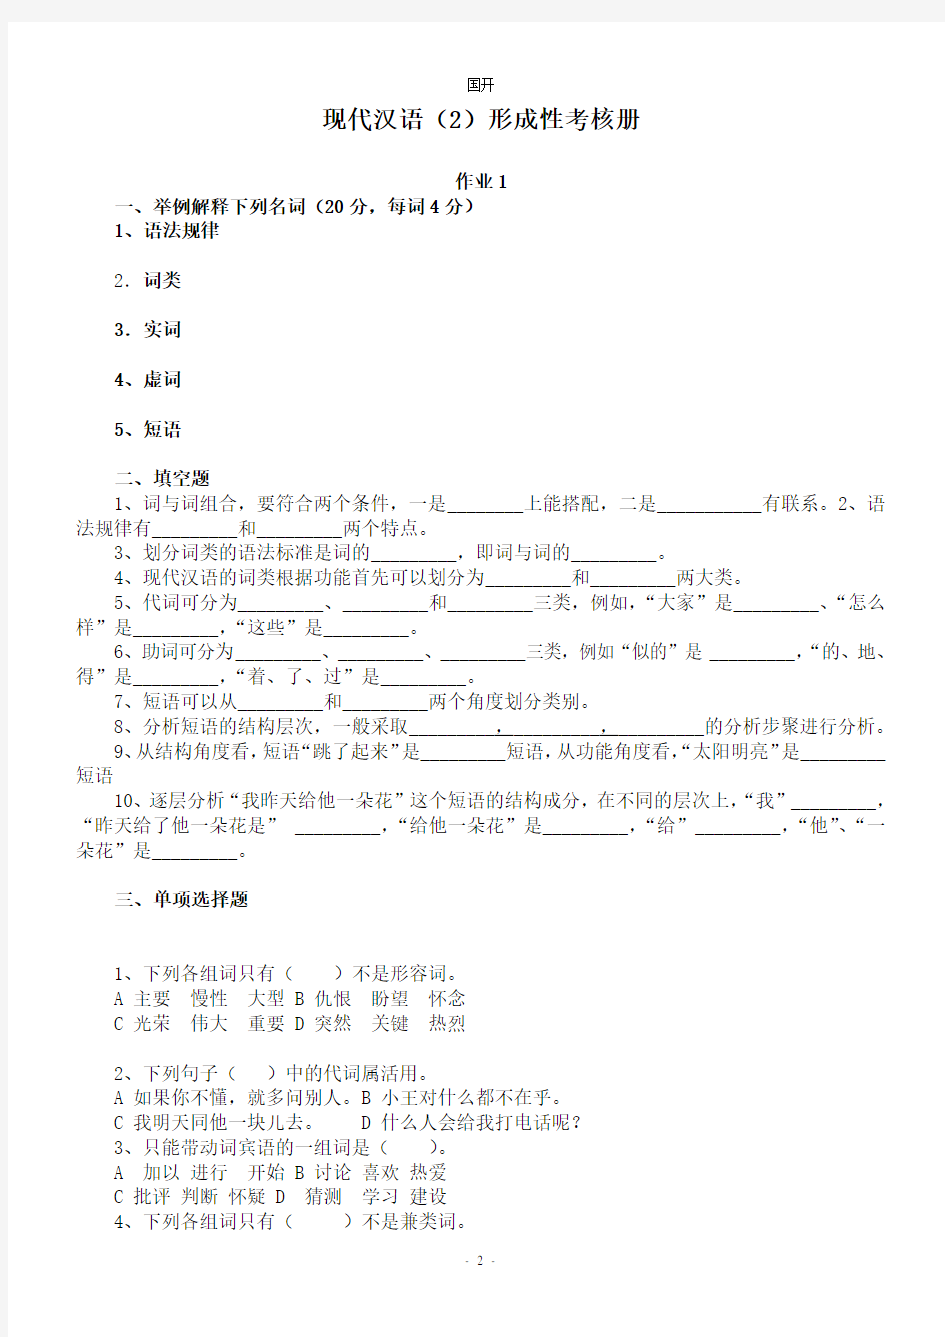 《现代汉语2》作业形考网考形成性考核册-国家开放大学电大